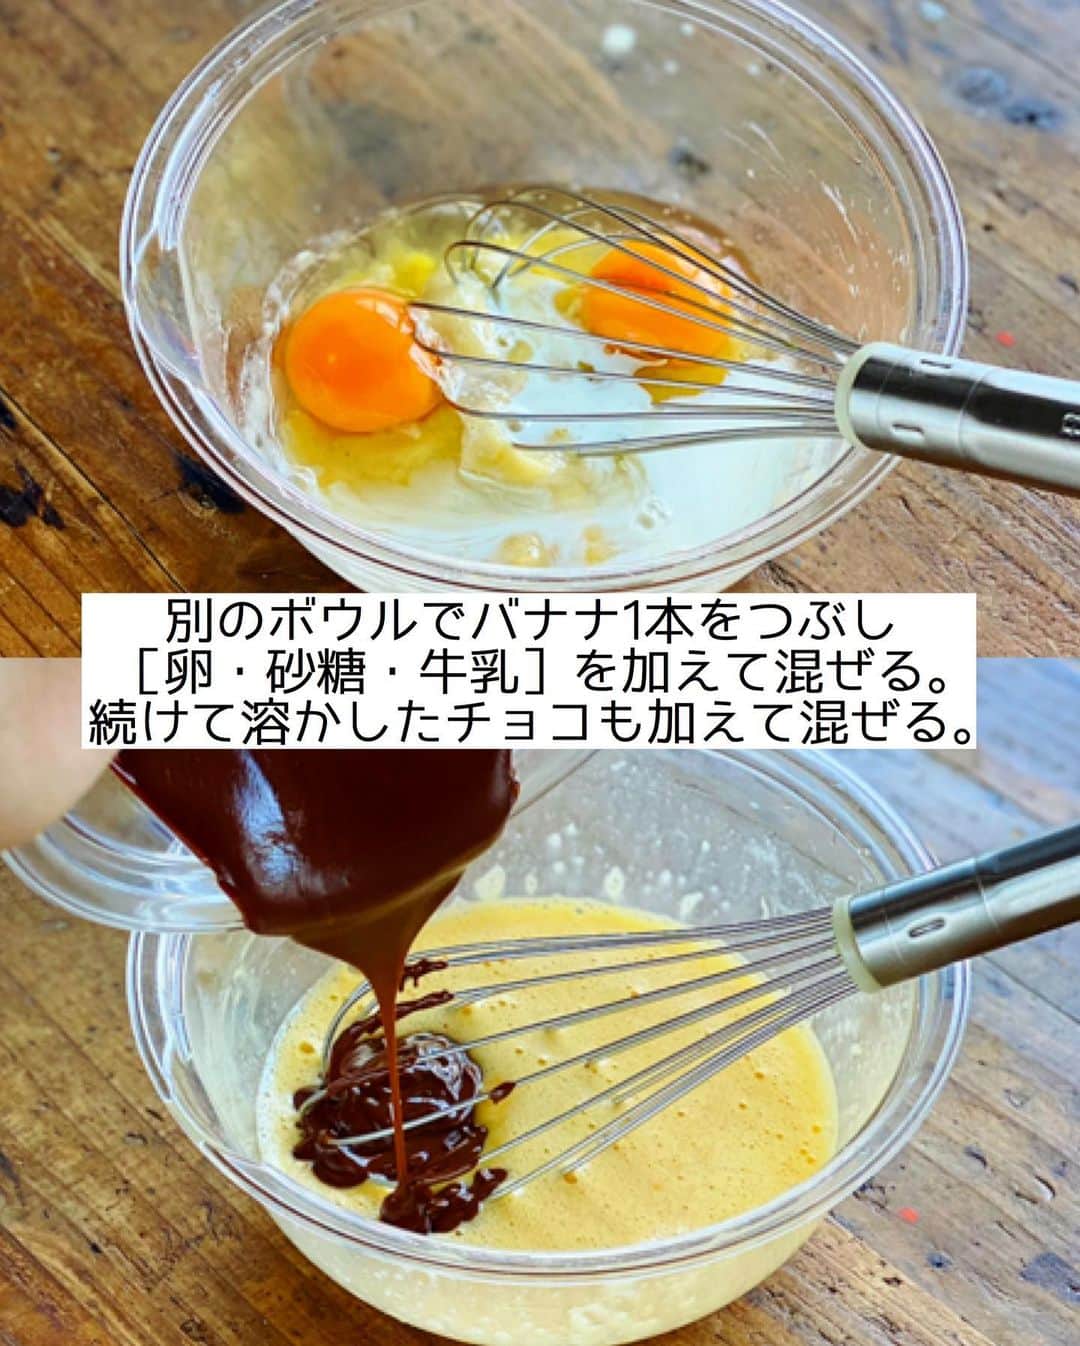 Mizuki【料理ブロガー・簡単レシピ】さんのインスタグラム写真 - (Mizuki【料理ブロガー・簡単レシピ】Instagram)「・﻿ 【#レシピ 】ーーーーーーー﻿ ホットケーキミックスで！﻿ バナナブラウニー﻿ ーーーーーーーーーーーーー﻿ ﻿ ﻿ ﻿ おはようございます(*^^*)﻿ ﻿ 今日もホケミスイーツ☆﻿ \バナナブラウニー/ のご紹介です♩﻿ ﻿ チョコとバナナをたっぷり加えた生地は﻿ バター少なめでもしっとりと仕上がり﻿ 濃厚な風味を楽しめますよ〜♡﻿ 今回はトッピングにもバナナを使用して﻿ 見た目もかわいく仕上げました(*´艸`)﻿ ﻿ 基本混ぜて焼くだけで﻿ とっても簡単に作れるので﻿ よかったらお試し下さいね(*^^*)﻿ ﻿ ﻿ ﻿ ＿＿＿＿＿＿＿＿＿＿＿＿＿＿＿＿＿＿＿＿﻿ 【15cm角型1台分】﻿ バナナ...2本﻿ 板チョコ...2枚(100g)﻿ バター(無塩・有塩どちらでも)...50g﻿ ●卵...2個﻿ ●砂糖・牛乳...各大1﻿ ☆ホットケーキミックス...50g﻿ ☆ココアパウダー...10g﻿ ﻿ (準備)型にシートを敷く。ココアはふるう。オーブンを170度に予熱する。﻿ 1.チョコとバターを細かく刻んで耐熱ボウルに入れ、600Wのレンジで1分加熱し、混ぜて溶かす。﻿ 2.別のボウルにバナナ1本を入れてフォークでつぶし、●を加えて泡立て器で混ぜ、1も加えて混ぜる。﻿ 3.最後に☆を加え、ゴムベラでさっくり混ぜて型に注ぐ。﻿ 4.残り1本のバナナを16等分の輪切りにして(＊あればレモン汁を振ると変色を防止できます)2にのせ、予熱したオーブンで25〜30分焼く。﻿ ￣￣￣￣￣￣￣￣￣￣￣￣￣￣￣￣￣￣￣￣﻿ ﻿ ﻿ ﻿ 《ポイント》﻿ ♦︎バナナは1本120gのものを使用しました♩﻿ ♦︎バターは無塩でも有塩でもOK！チョコの種類もお好みで！﻿ ♦︎工程1でチョコが溶け残る場合は追加加熱して下さい☆﻿ ♦︎中央が焼けにくいので竹串を刺して確認して下さい☆﻿ ♦︎トッピングのバナナはなくてもOK♩﻿ ﻿ ﻿ ﻿ ﻿ ﻿ ﻿ ﻿ ﻿ ⭐️発売中⭐️3刷重版が決まりました😭﻿ 本当にありがとうございます(涙)﻿ _____________________________________﻿ \15分でいただきます/﻿ 📕#Mizukiの2品献立 📕﻿ (9月24日発売・マガジンハウス)﻿ ￣￣￣￣￣￣￣￣￣￣￣￣￣￣￣￣￣﻿ ﻿ 忙しい私たちには﻿ 2品くらいがちょうどいい！﻿ 『しんどくない献立、考えました』﻿ ￣￣￣￣￣￣￣￣￣￣￣￣￣￣￣￣﻿ ﻿ ーーーーーPART.1 ーーーーー﻿ 【Mizukiのお墨つき！２品献立ベスト10】﻿ 約15分でできる10献立をご紹介！﻿ メインは全部フライパン、副菜はレンチンor混ぜるだけ♡﻿ ﻿ ーーーーーPART.2 ーーーーー﻿ 【フライパンひとつ！今夜のメインおかず】﻿ 献立の主役になる肉や魚のおかず50品！﻿ Part3の副菜と組み合わせれば﻿ 献立のバリエーションが広がりますよ♩﻿ ﻿ ーーーーー PART.3 ーーーーー﻿ 【合間に作れる！ 野菜別かんたん副菜】﻿ レンチンor和えるだけの副菜レシピを﻿ 素材別にたっぷり収録♩﻿ ﻿ ーーーーー番外編ーーーーー﻿ 【ひとつで満足！ご飯＆麺】﻿ 【具だくさん！おかずスープ】﻿ 【オーブンいらずのおやつレシピ】﻿ ￣￣￣￣￣￣￣￣￣￣￣￣￣￣￣￣￣￣﻿ (ハイライトにリンク🔗あります💗)﻿ ﻿ ﻿ ﻿ ﻿ ＿＿＿＿＿＿＿＿＿＿＿＿＿＿＿＿＿＿﻿ レシピを作って下さった際や﻿ レシピ本についてのご投稿には﻿ タグ付け( @mizuki_31cafe )して﻿ お知らせいただけると嬉しいです😊💕﻿ ￣￣￣￣￣￣￣￣￣￣￣￣￣￣￣￣￣￣﻿ ﻿ ﻿ ﻿ ﻿ #ホットケーキミックス#ホケミ#ブラウニー#バナナ#お菓子#Mizuki#簡単レシピ#時短レシピ#節約レシピ#料理#フーディーテーブル#マカロニメイト#おうちごはん#デリスタグラマー#料理好きな人と繋がりたい#食べ物#料理記録#おうちごはんlover#写真好きな人と繋がりたい#foodpic#cooking#recipe#lin_stagrammer#foodporn#yummy#f52grams#バナナブラウニーm」11月23日 8時42分 - mizuki_31cafe